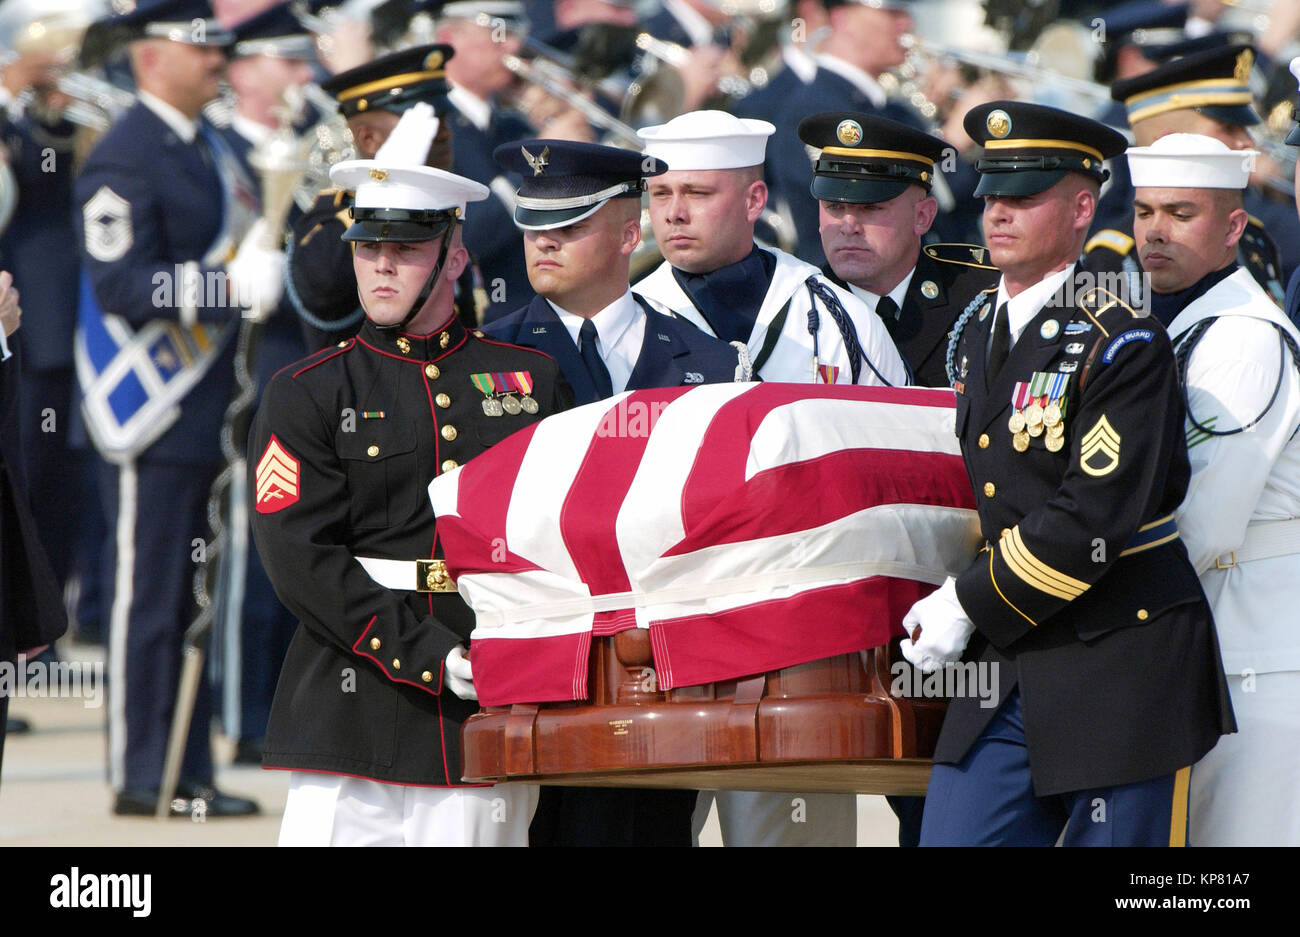 Eine kombinierte UNS militärische Ehrengarde trägt der 40. Präsident der Vereinigten Staaten Ronald Wilson Reagan in seiner Flagge - drapierte Schatulle zu einem leichenwagen Für eine Beerdigung Prozession nach seiner Ankunft an der Andrews Air Force Base (AFB), Maryland (MD), die an Bord der Air Force One. Stockfoto